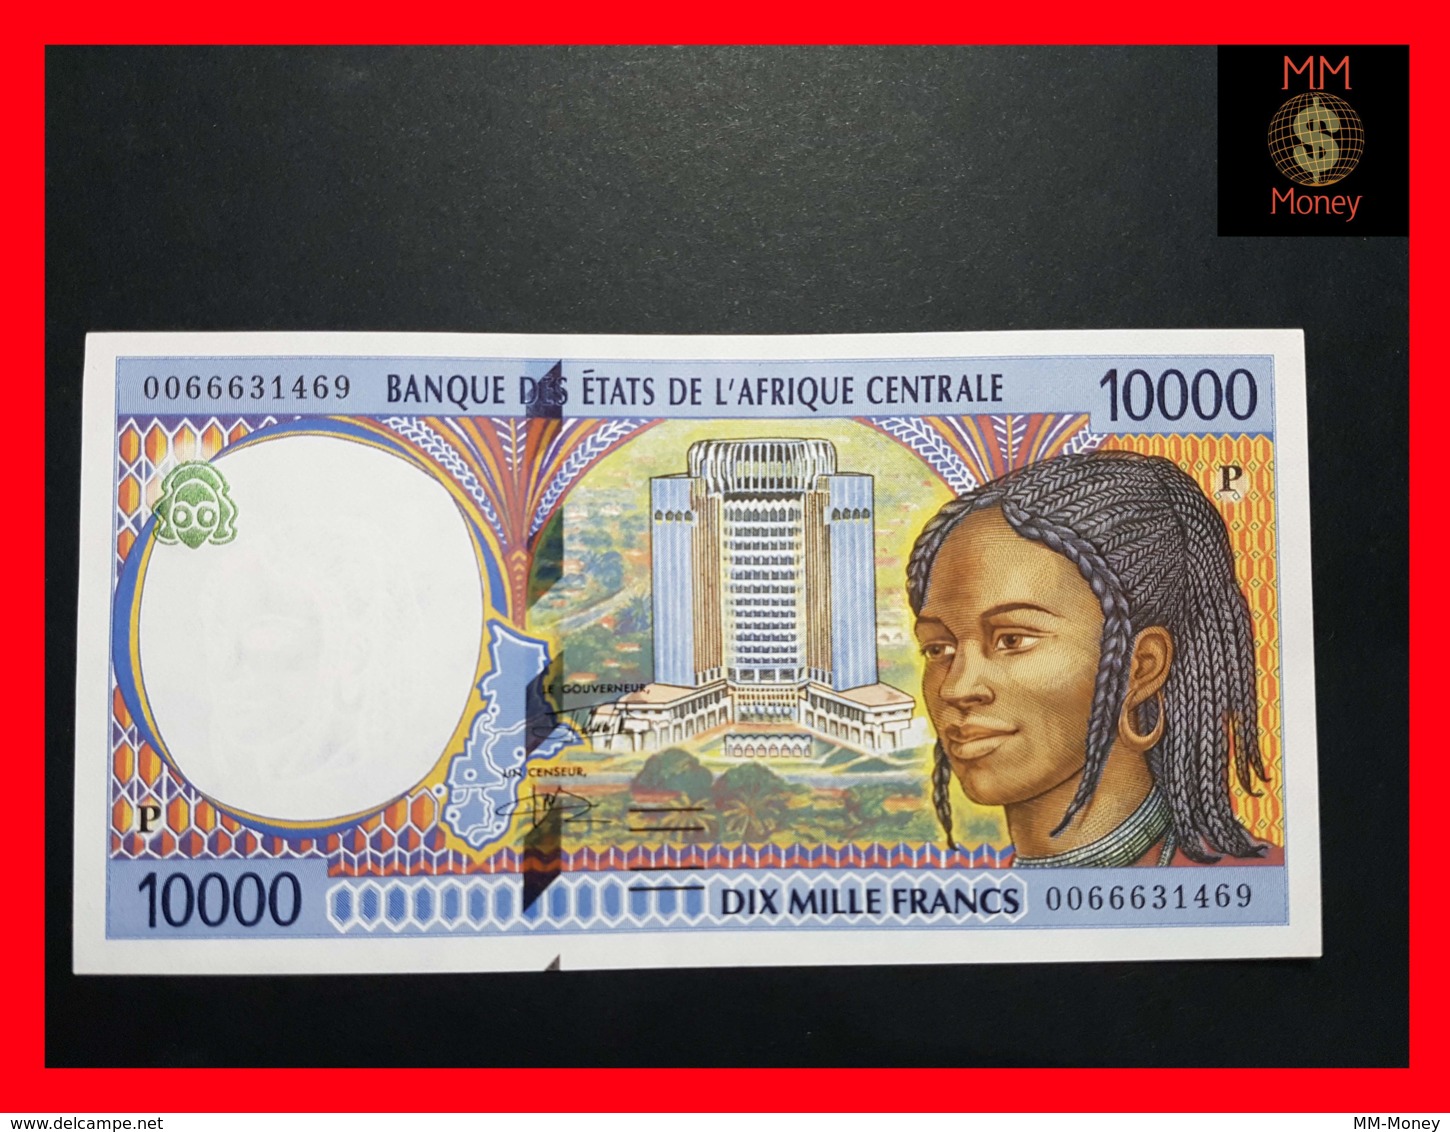 CENTRAL AFRICAN STATES  "P"  CHAD 10.000 10000 Francs 2000  P. 605 P F  AUNC - États D'Afrique Centrale